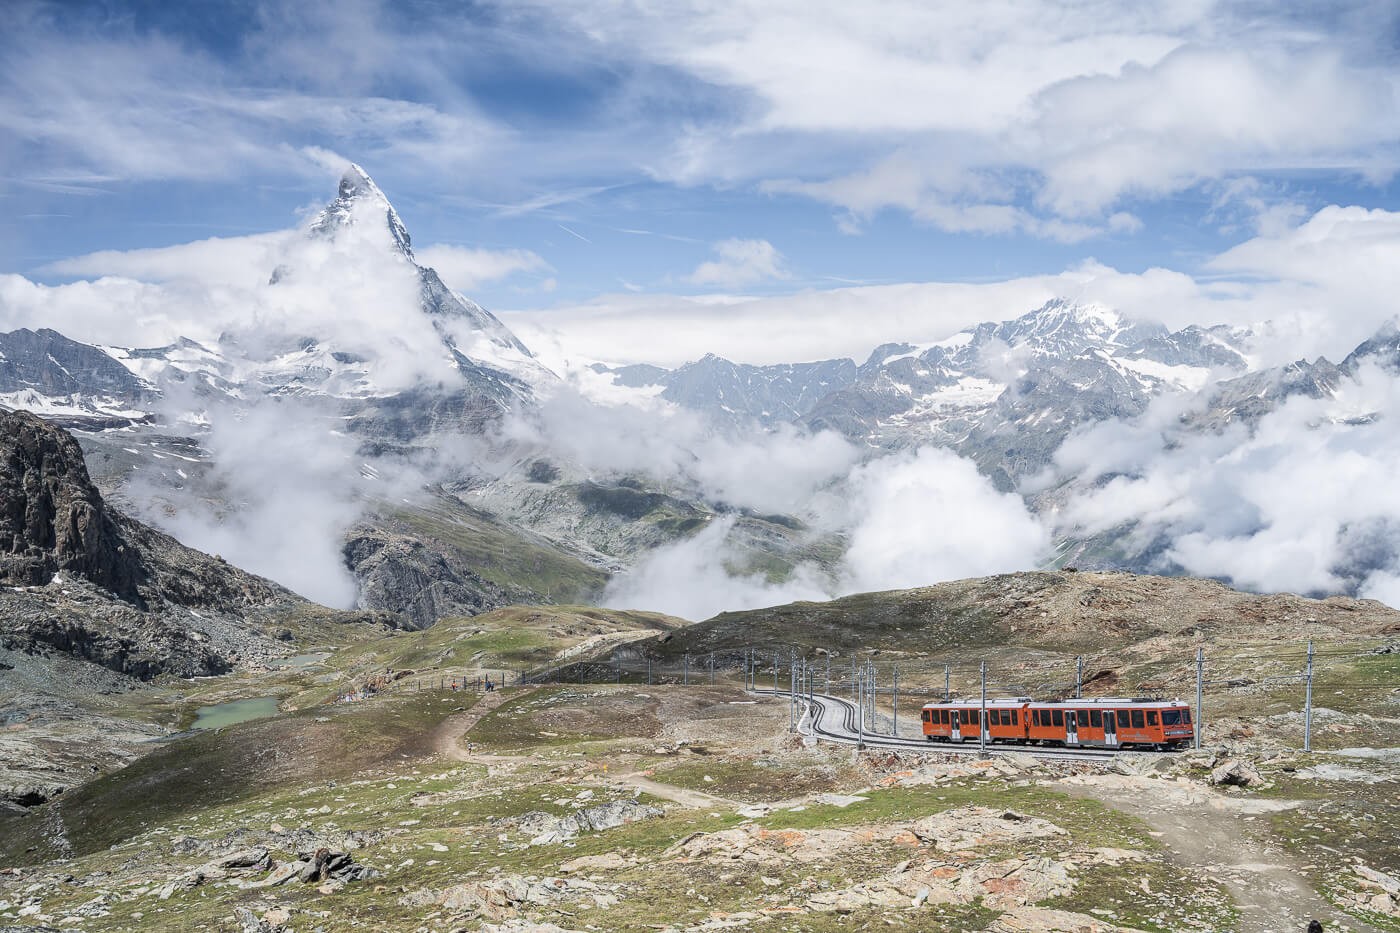 The Matterhorn and the red Matterhorn train climbing up to the Gornergrat